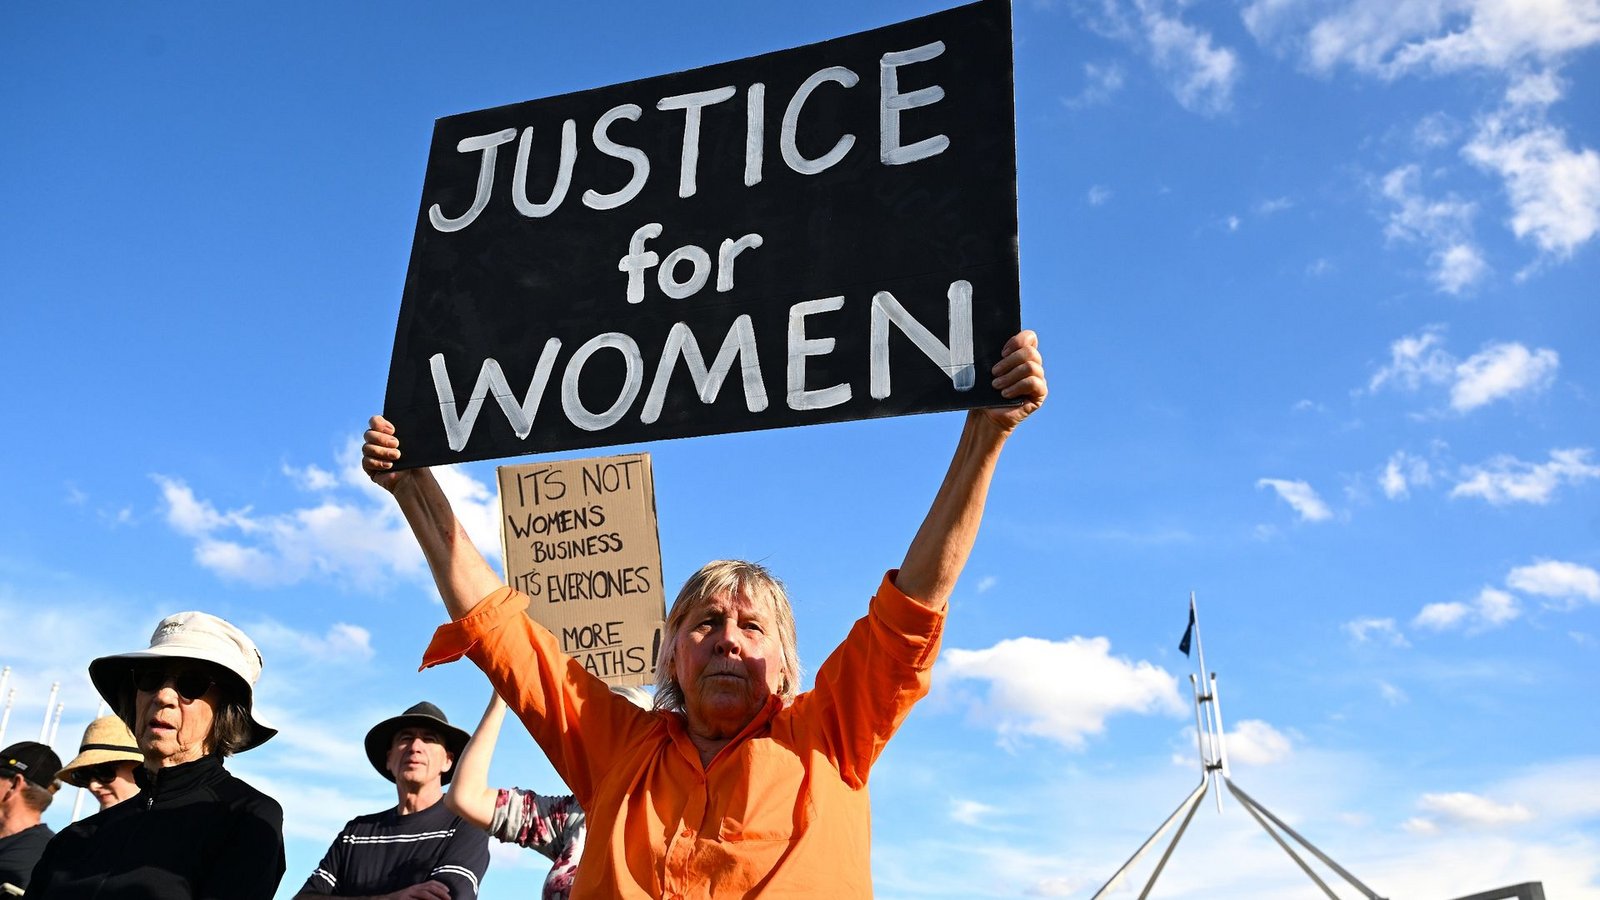 In Canberra fordert eine Frau "Justice for Women" (Gerechtigkeit für Frauen).Foto: Lukas Coch/AAP/dpa